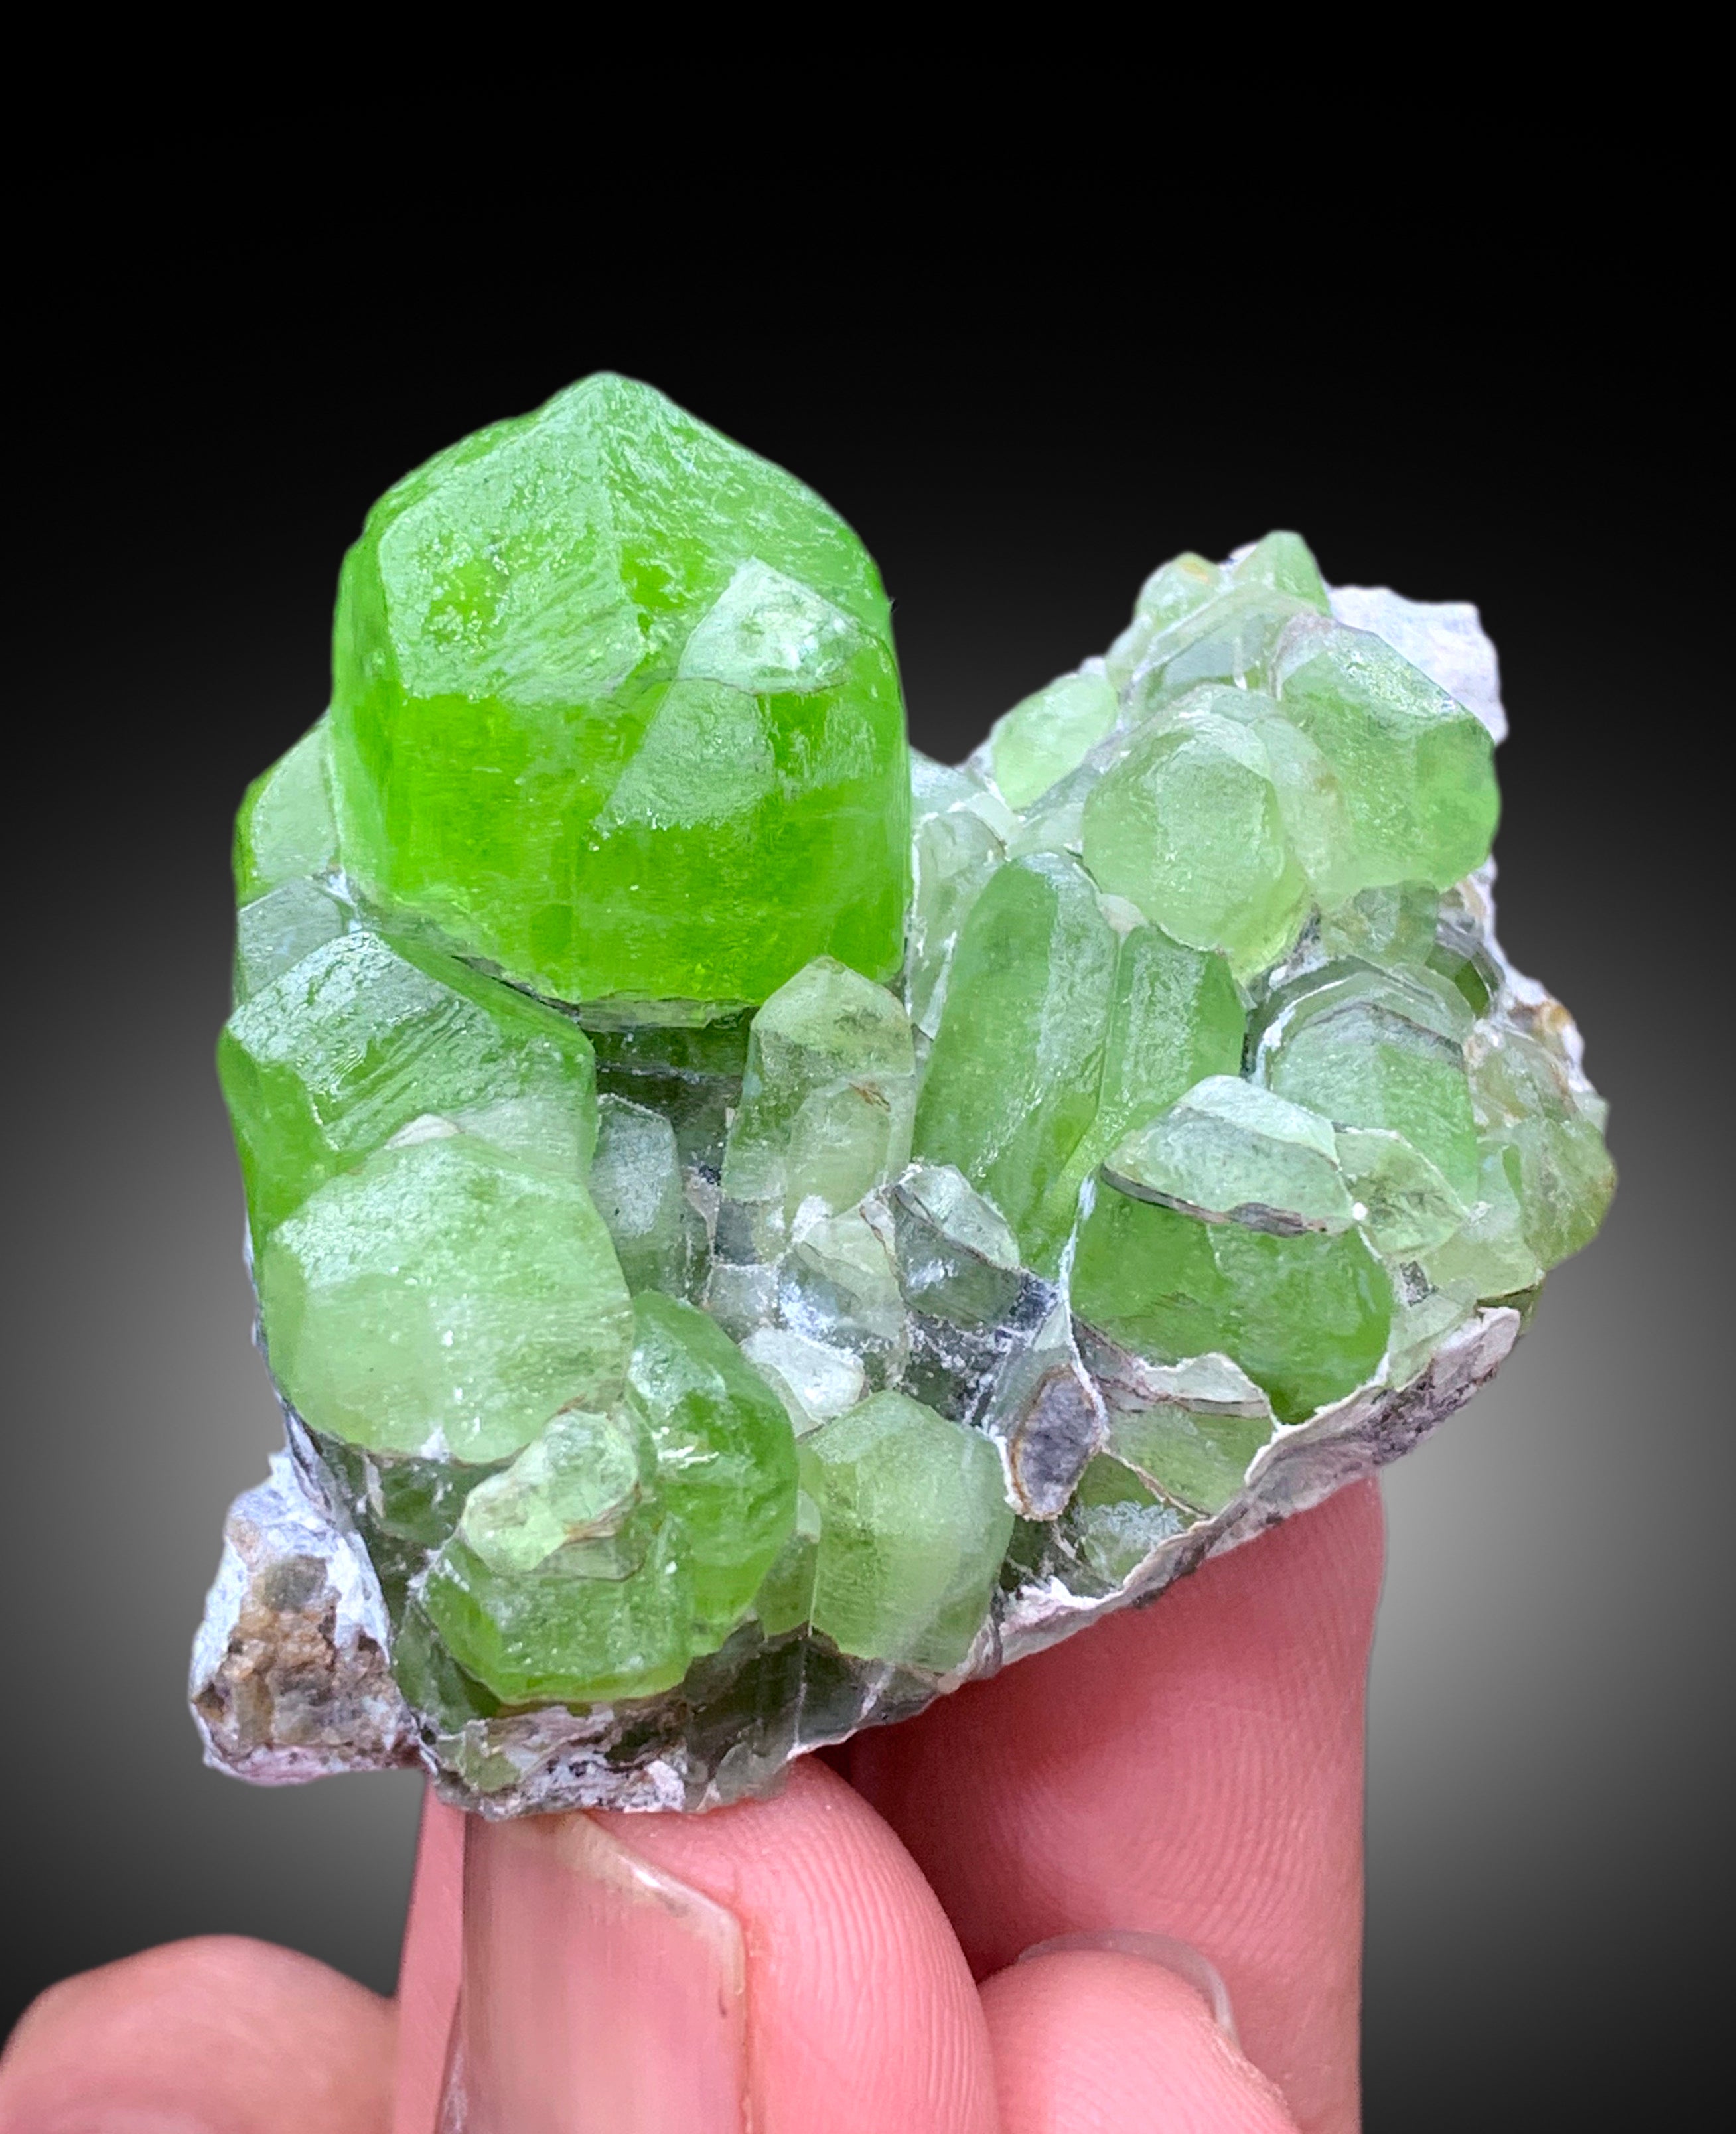 Lush Green Peridot Crystal Cluster, Peridot Specimen, Raw Mineral, Peridot Specimen from Supat Mine Pakistan - 66 gram